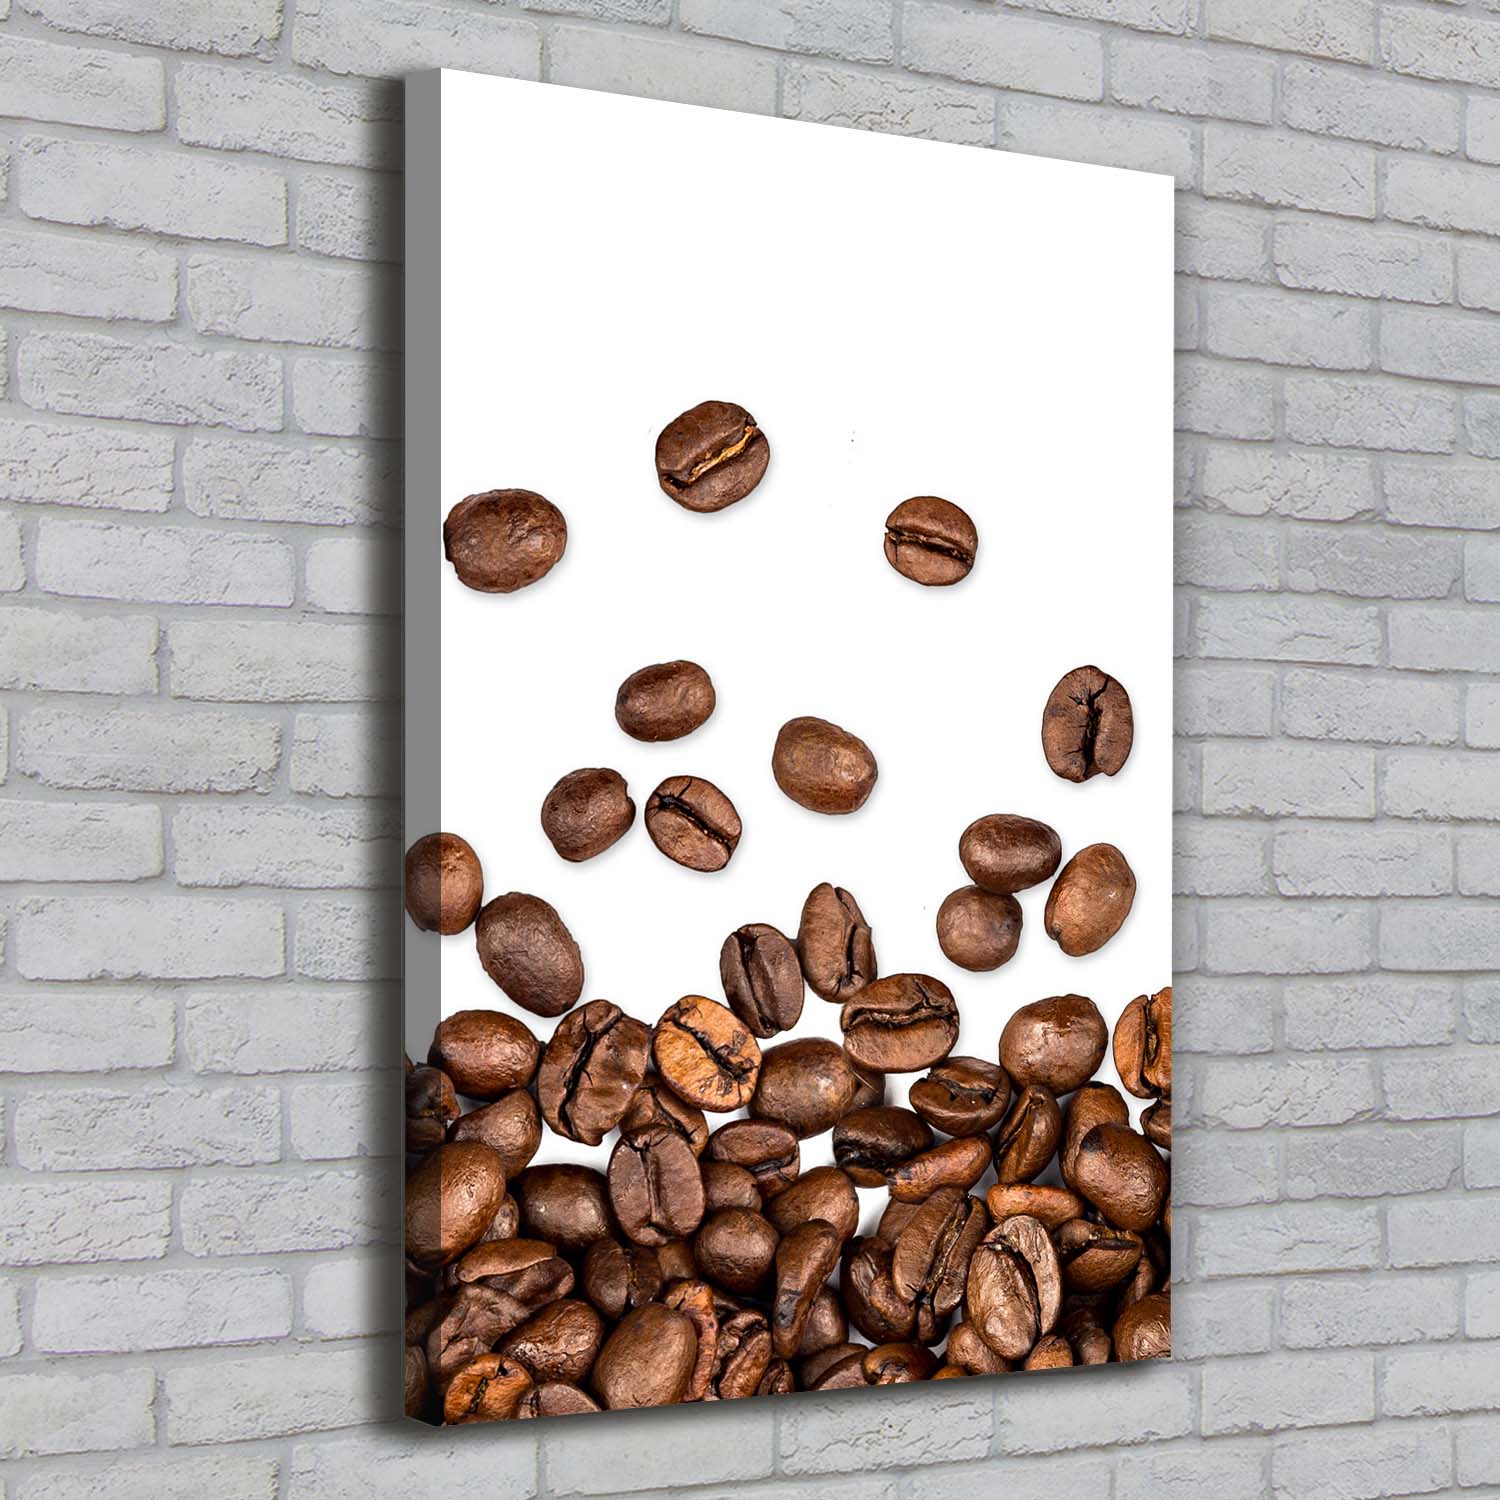 Leinwand-Bild Kunstdruck Hochformat 70x100 Bilder Kaffeebohnen